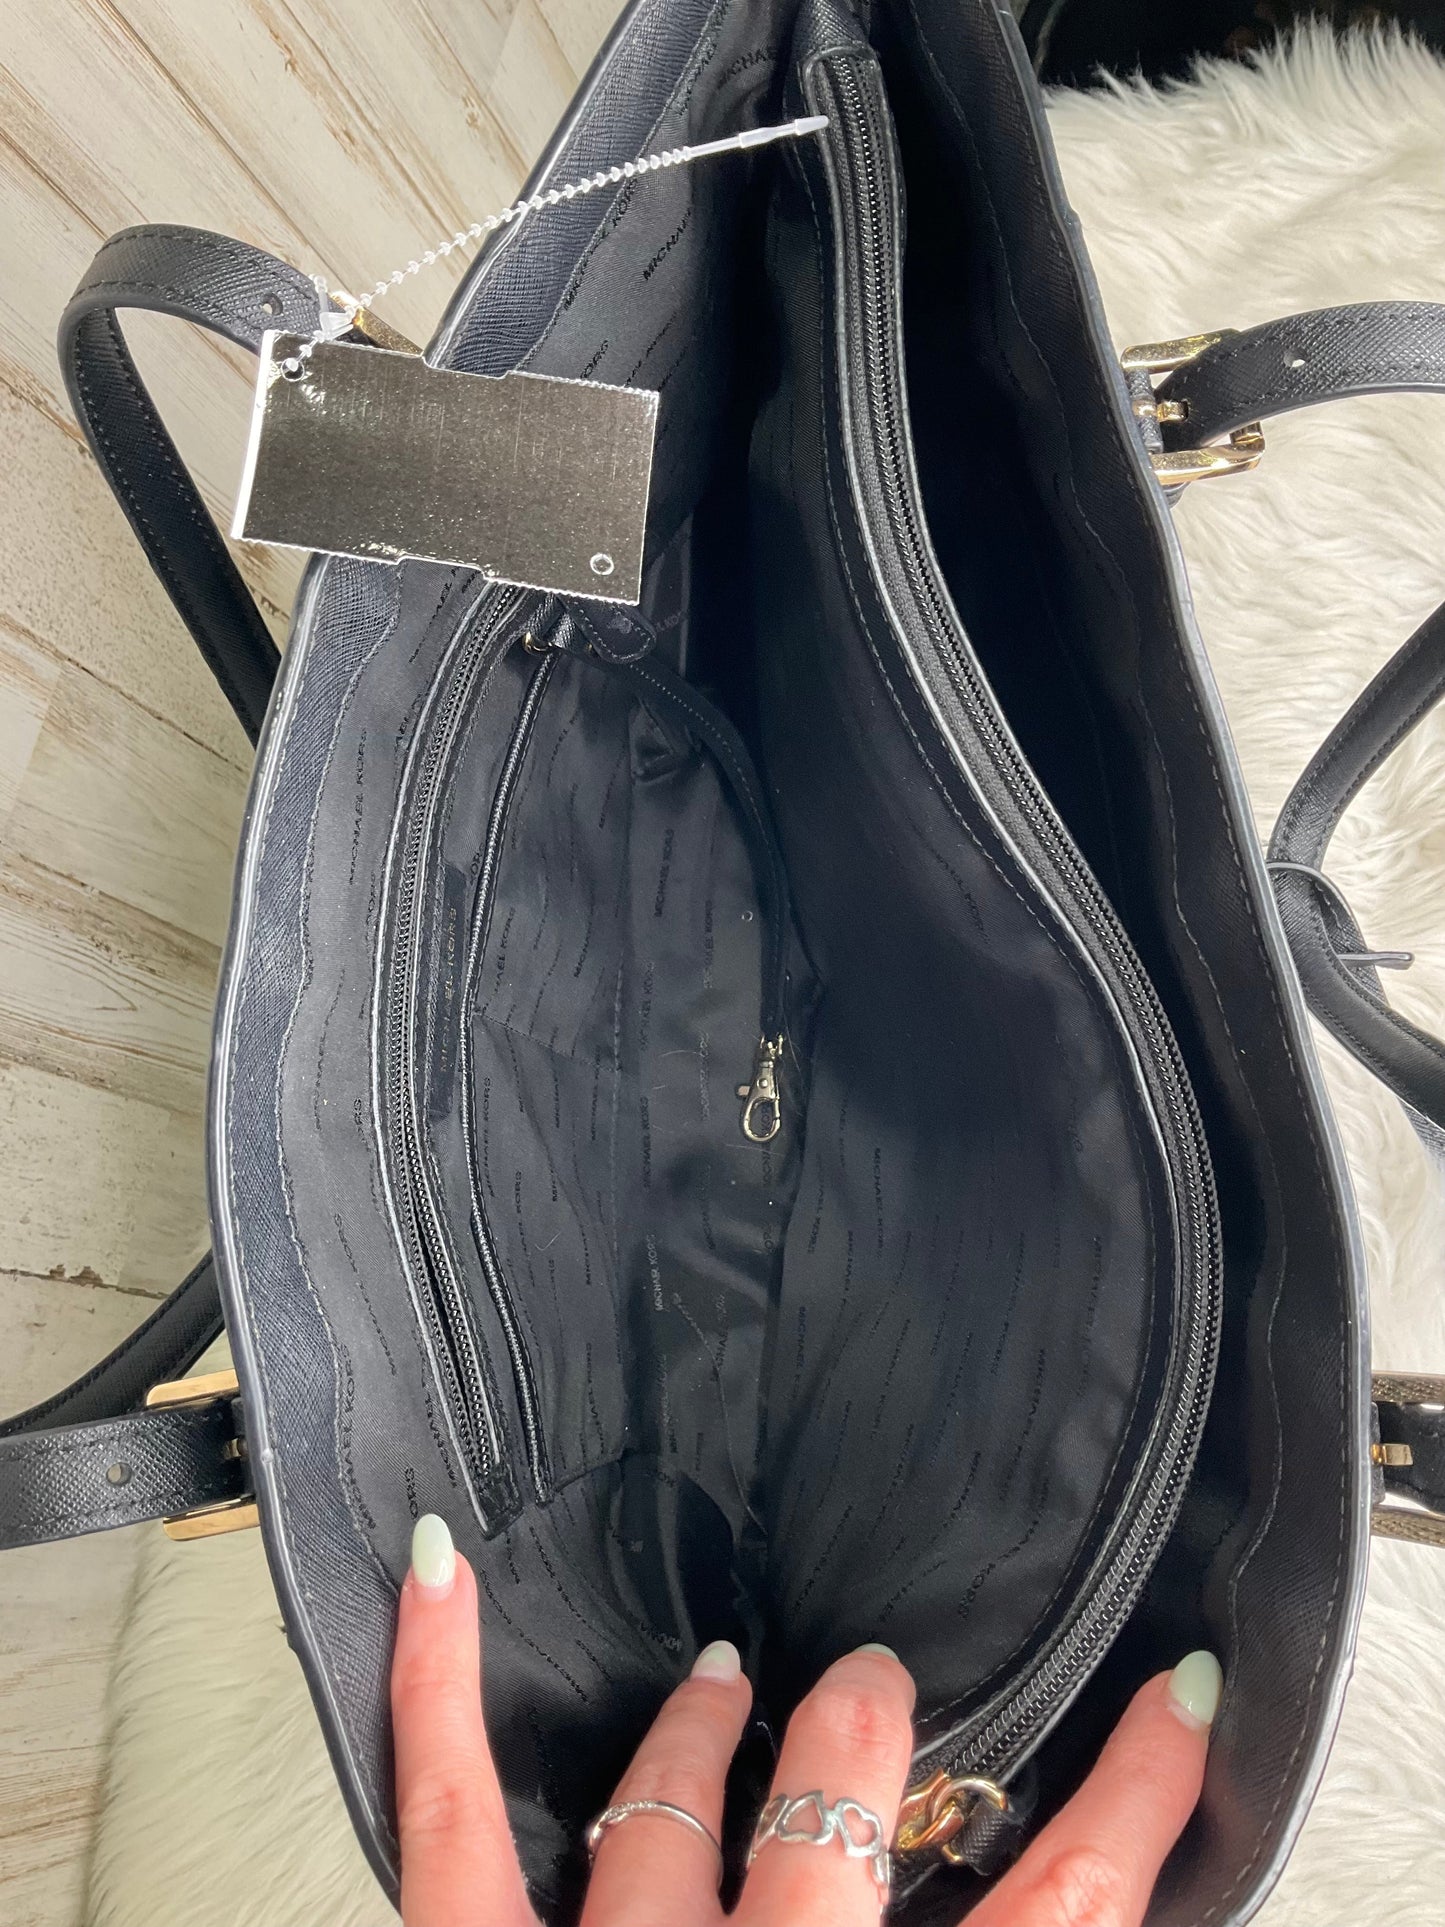 Black Handbag Designer Michael Kors, Size Large